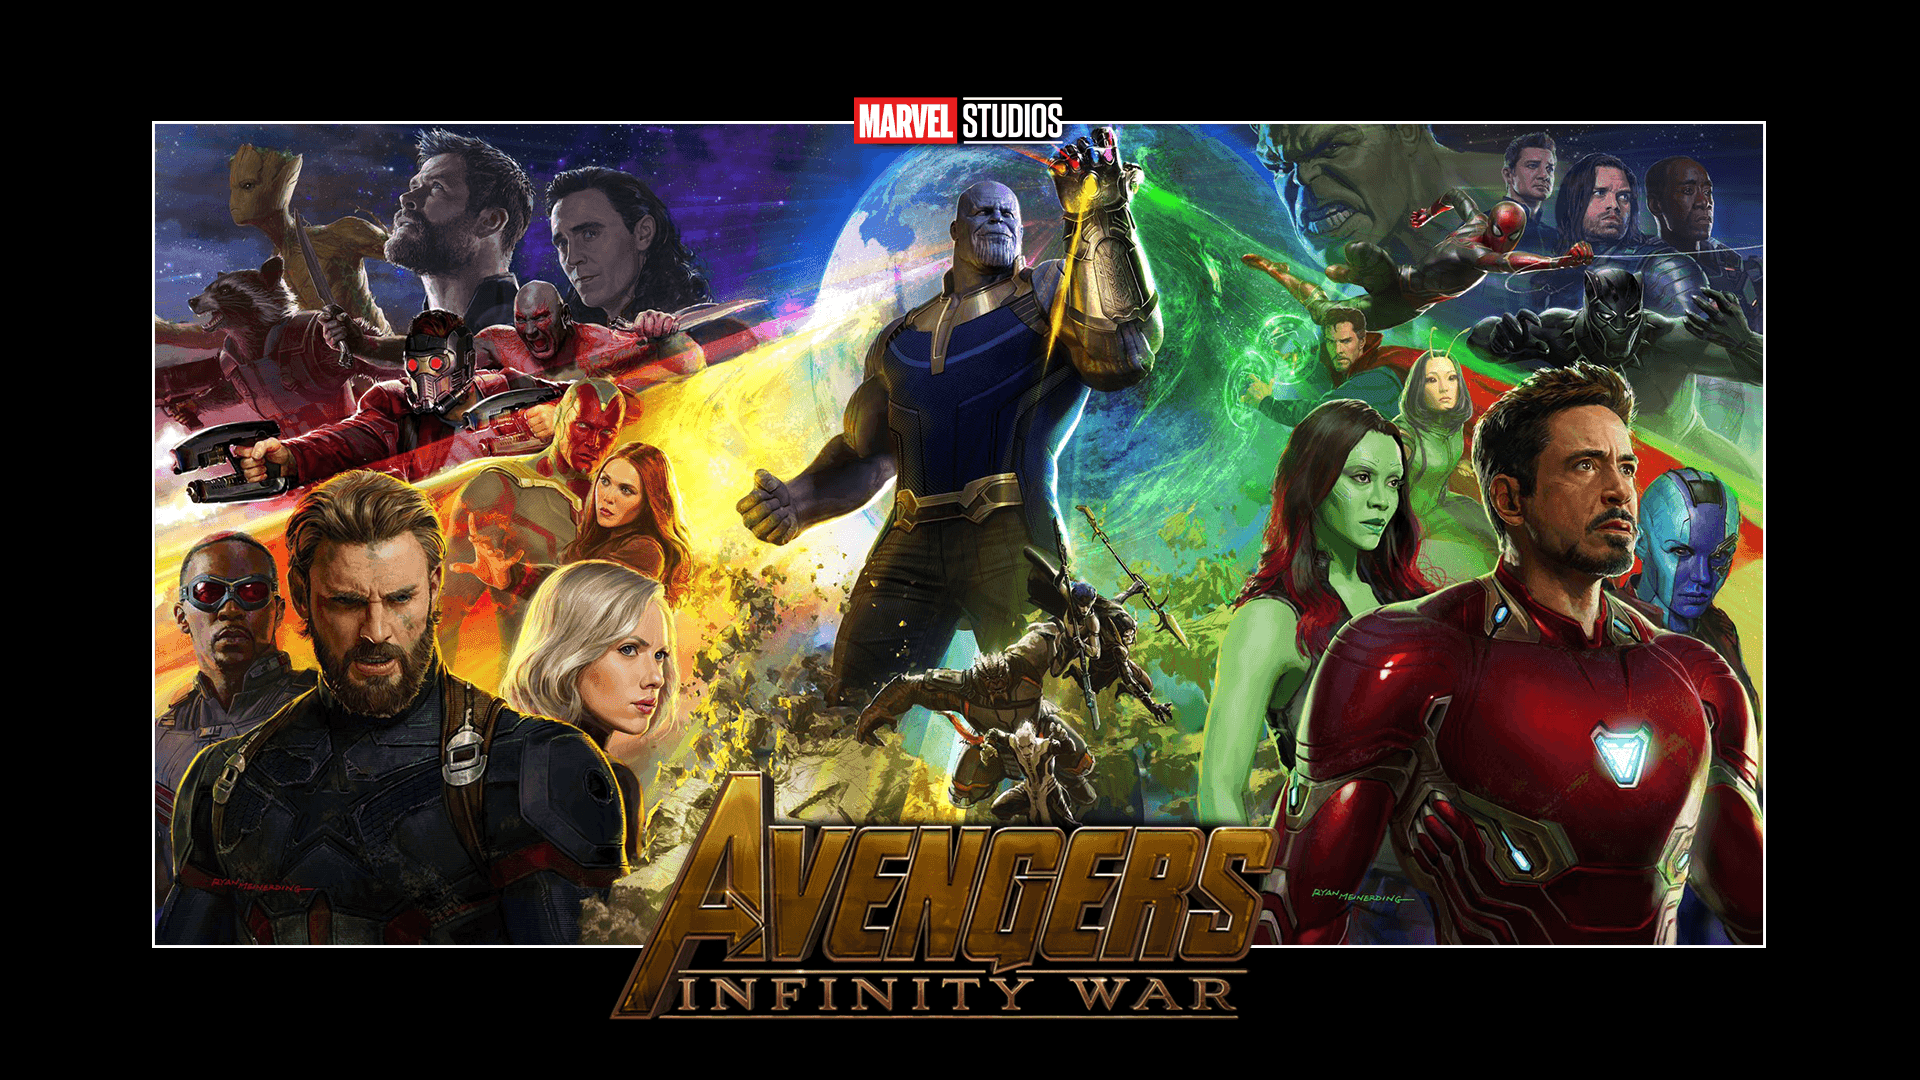 Epic Battle Scene Featuring Avengers In Infinity War